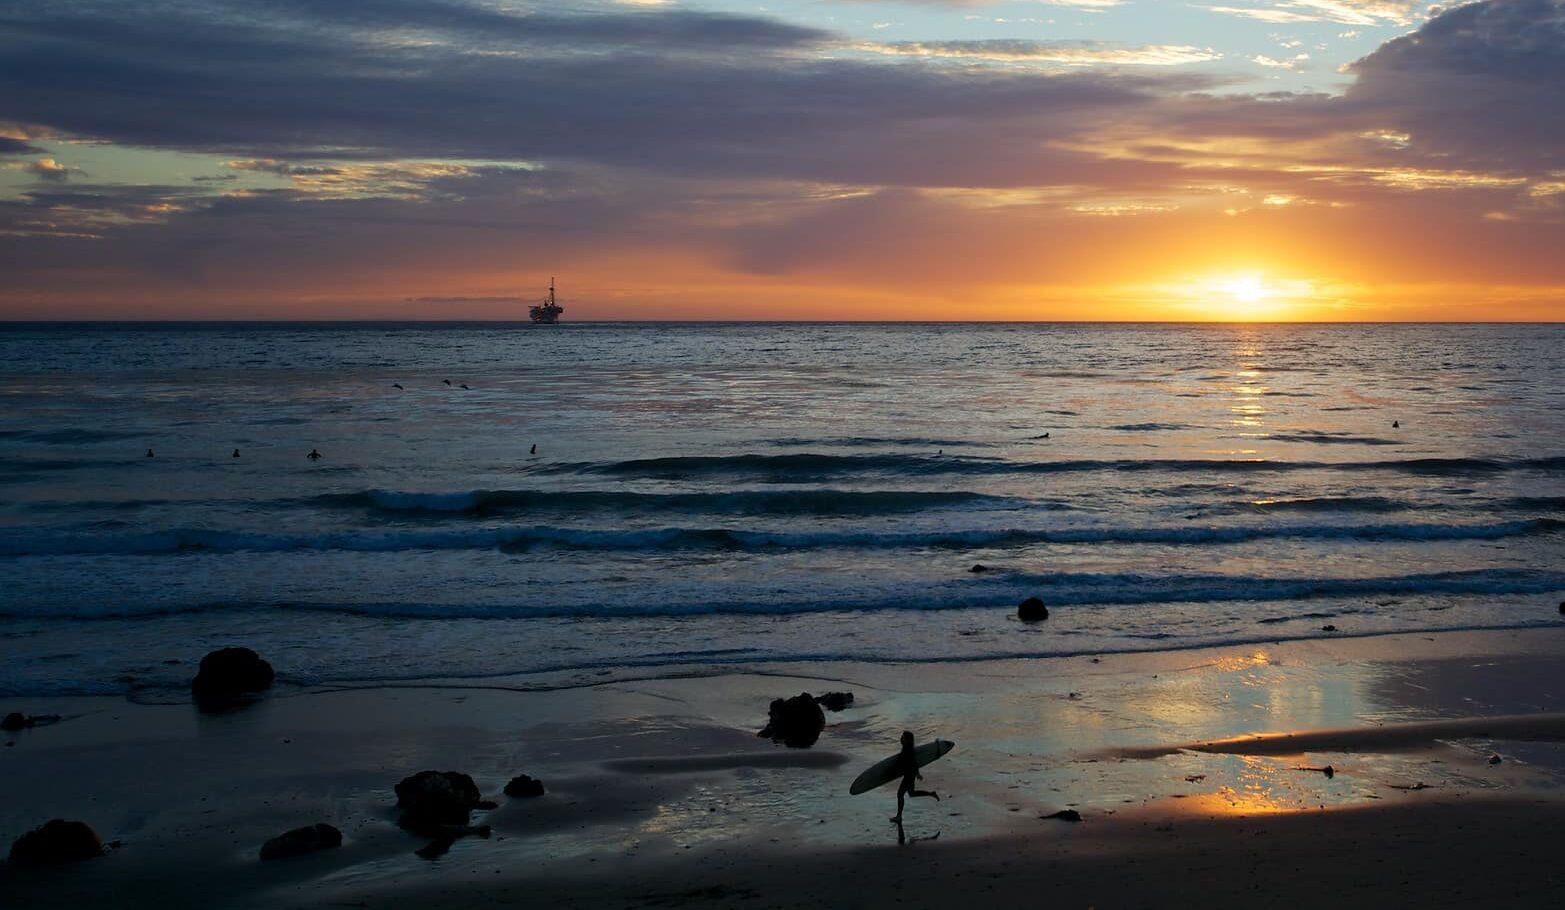 Un surfista en la orilla de una playa en la puesta de sol.